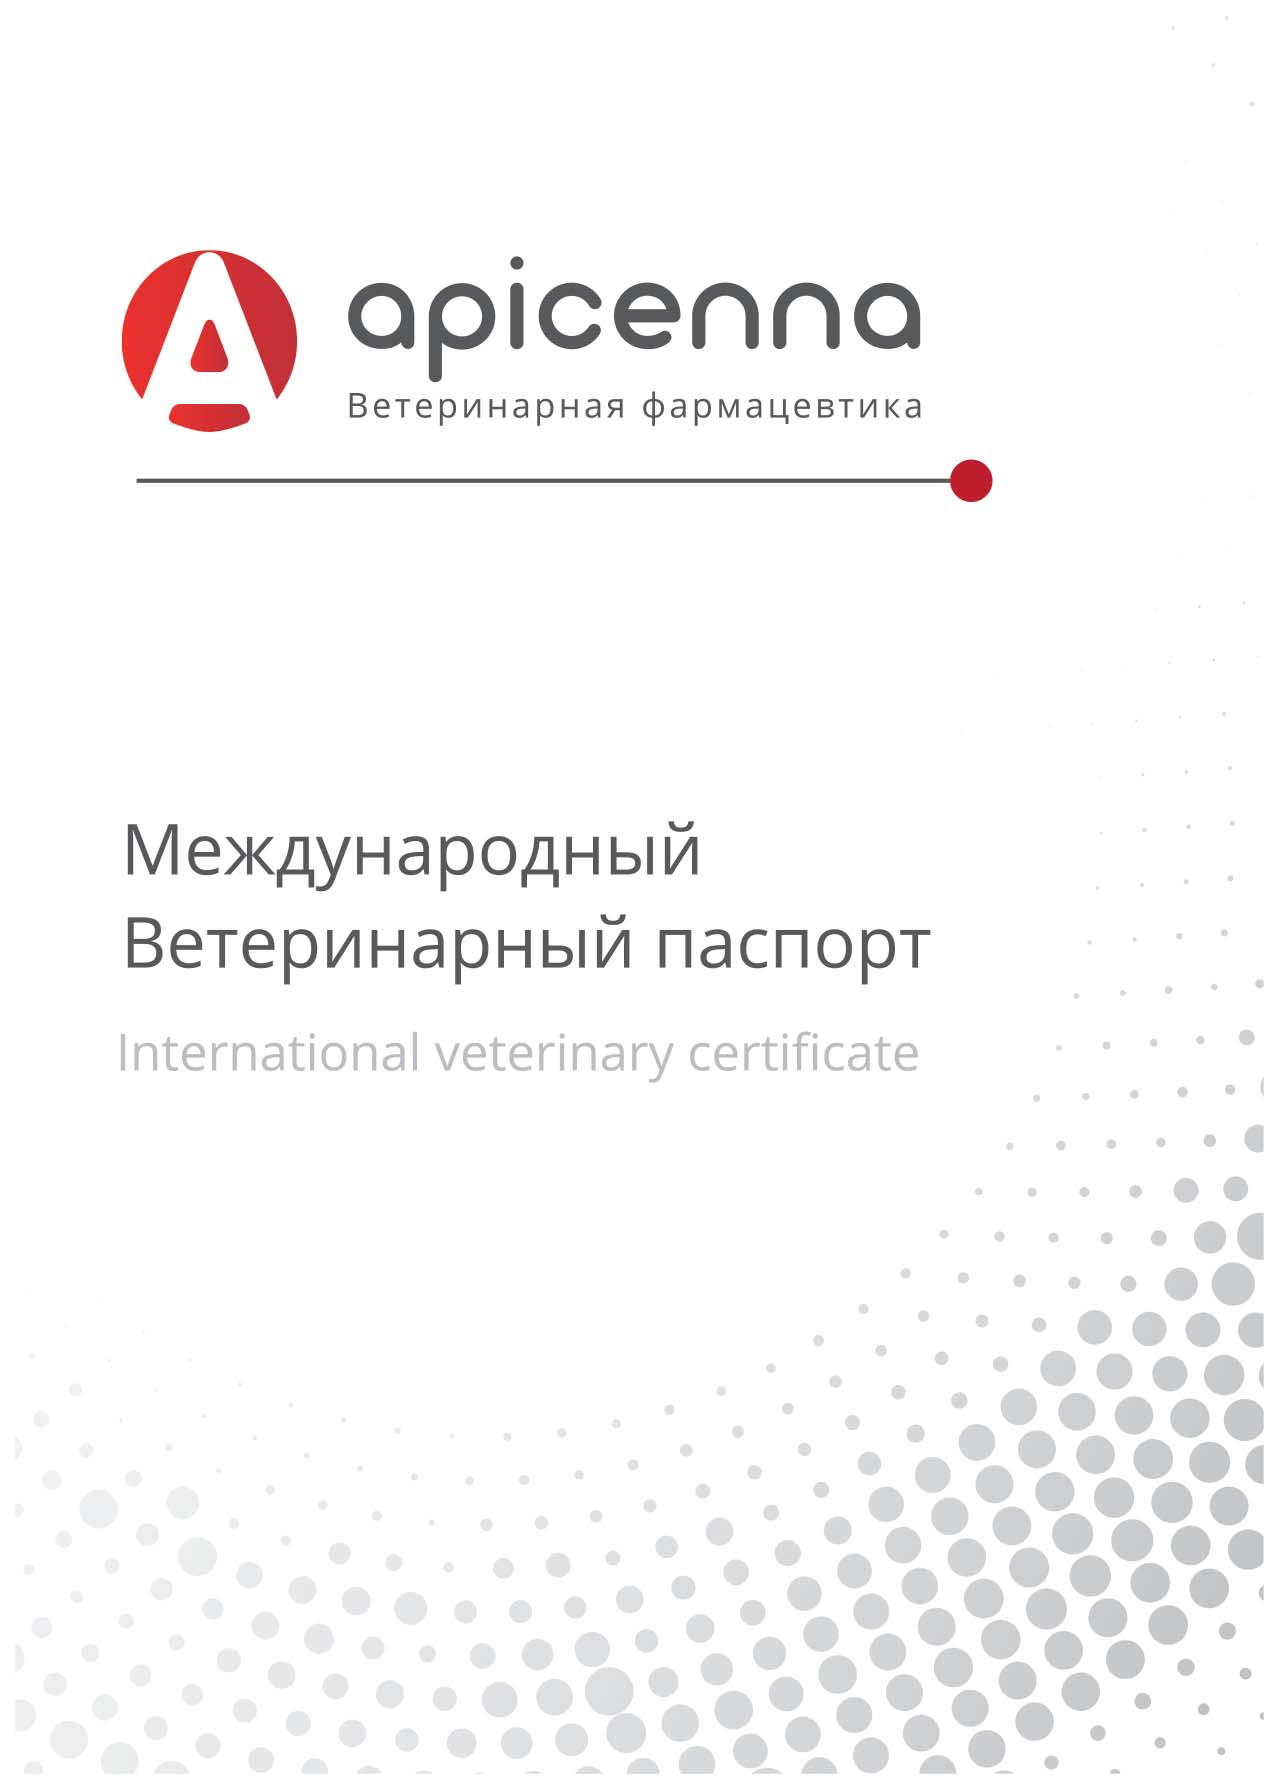 Международный ветеринарный паспорт для кошек, собак, хорьков, Apicenna